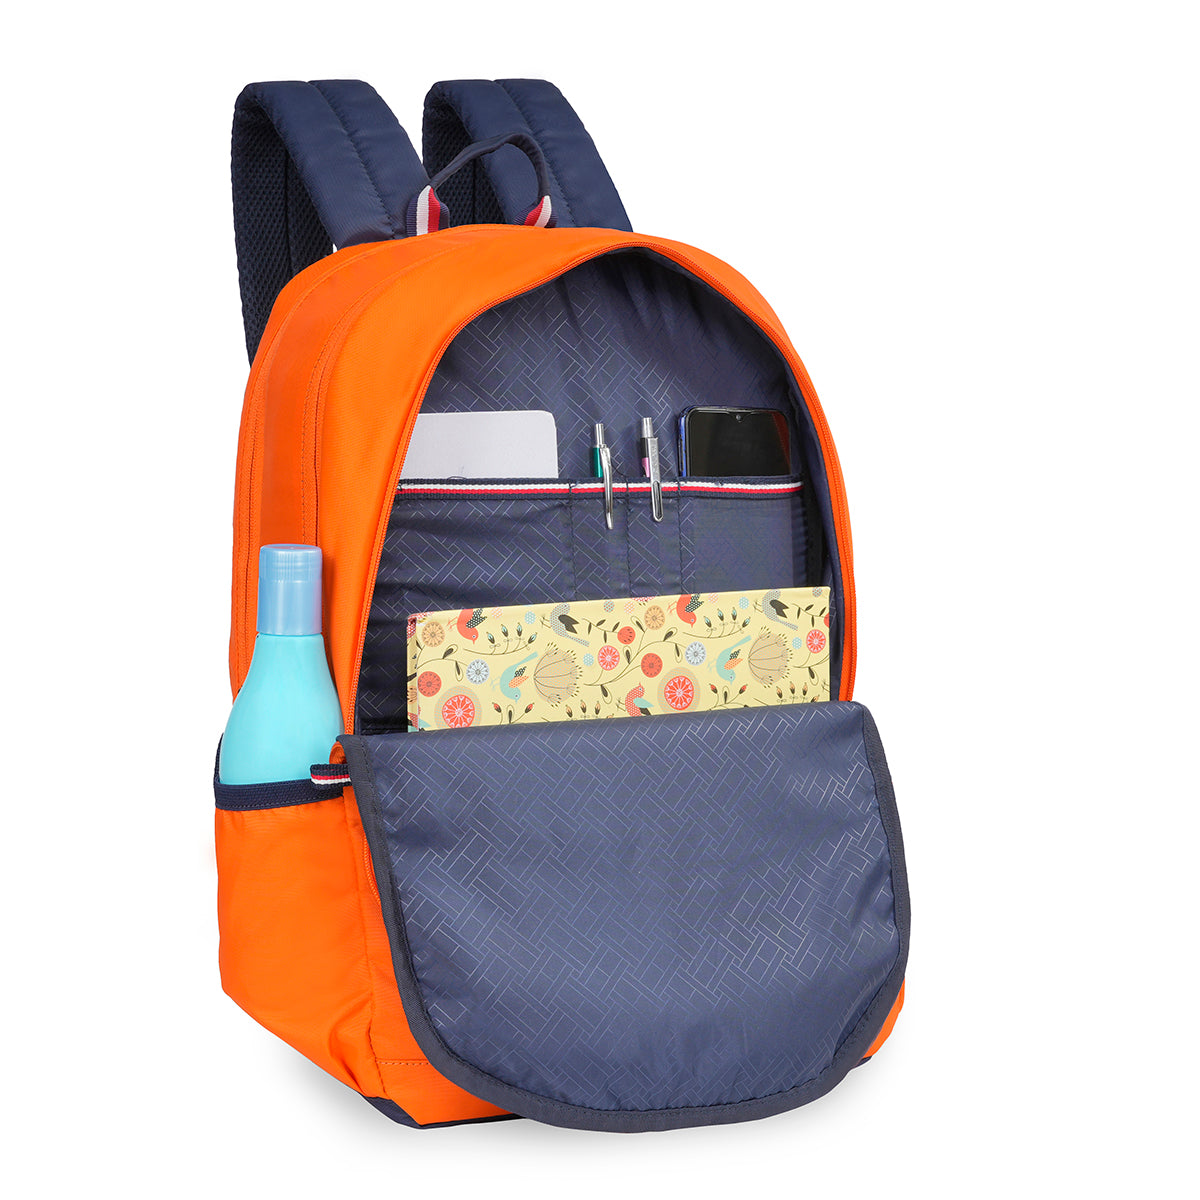 Tommy Hilfiger Deffodil Back to School Backpack Orange